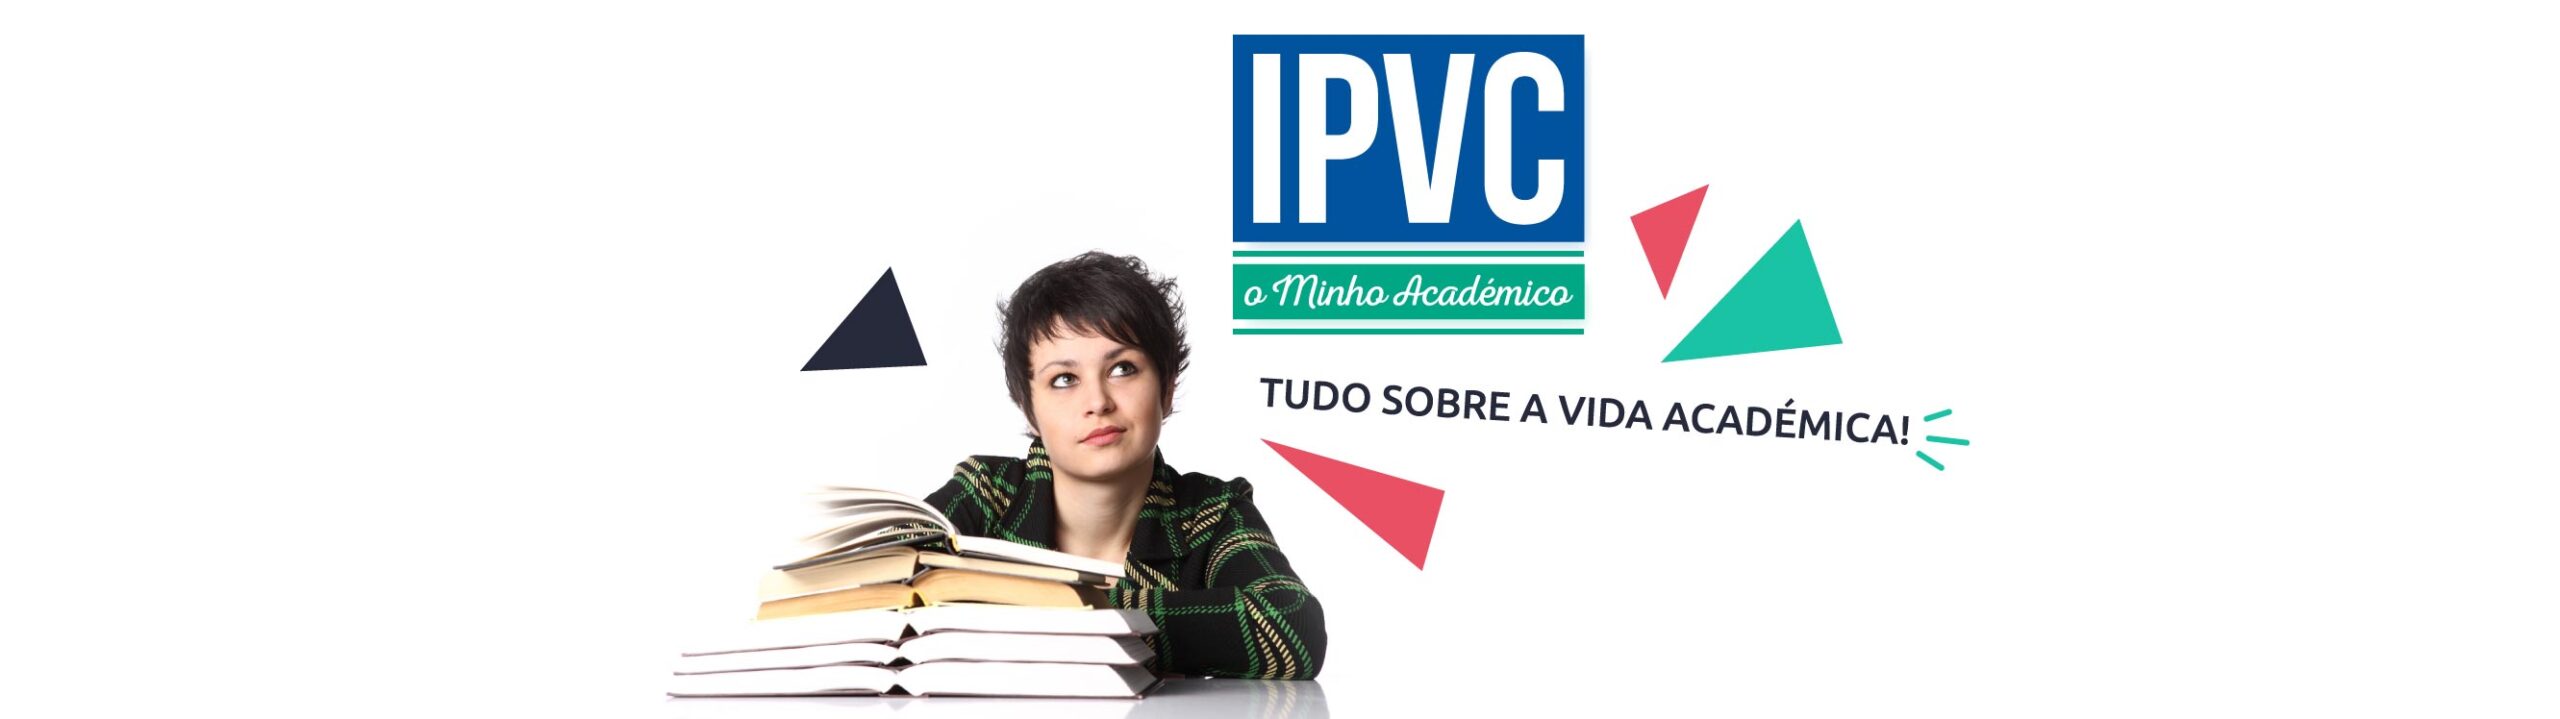 IPVC – O Minho Académico (Ed. 039)